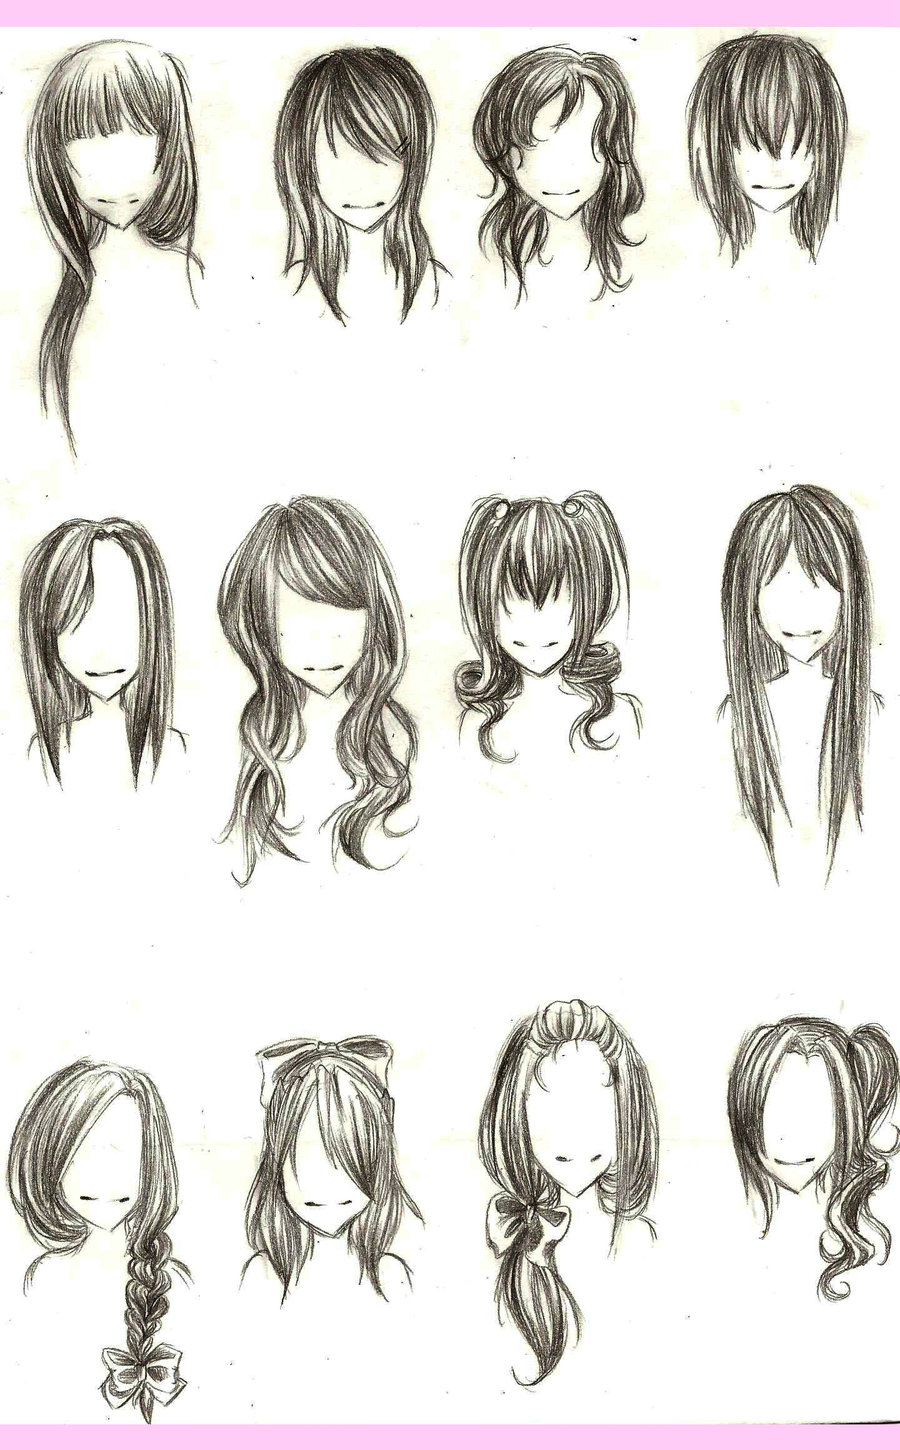 dicas como desenhar mangá: Tipo de cabelo para referência em seu